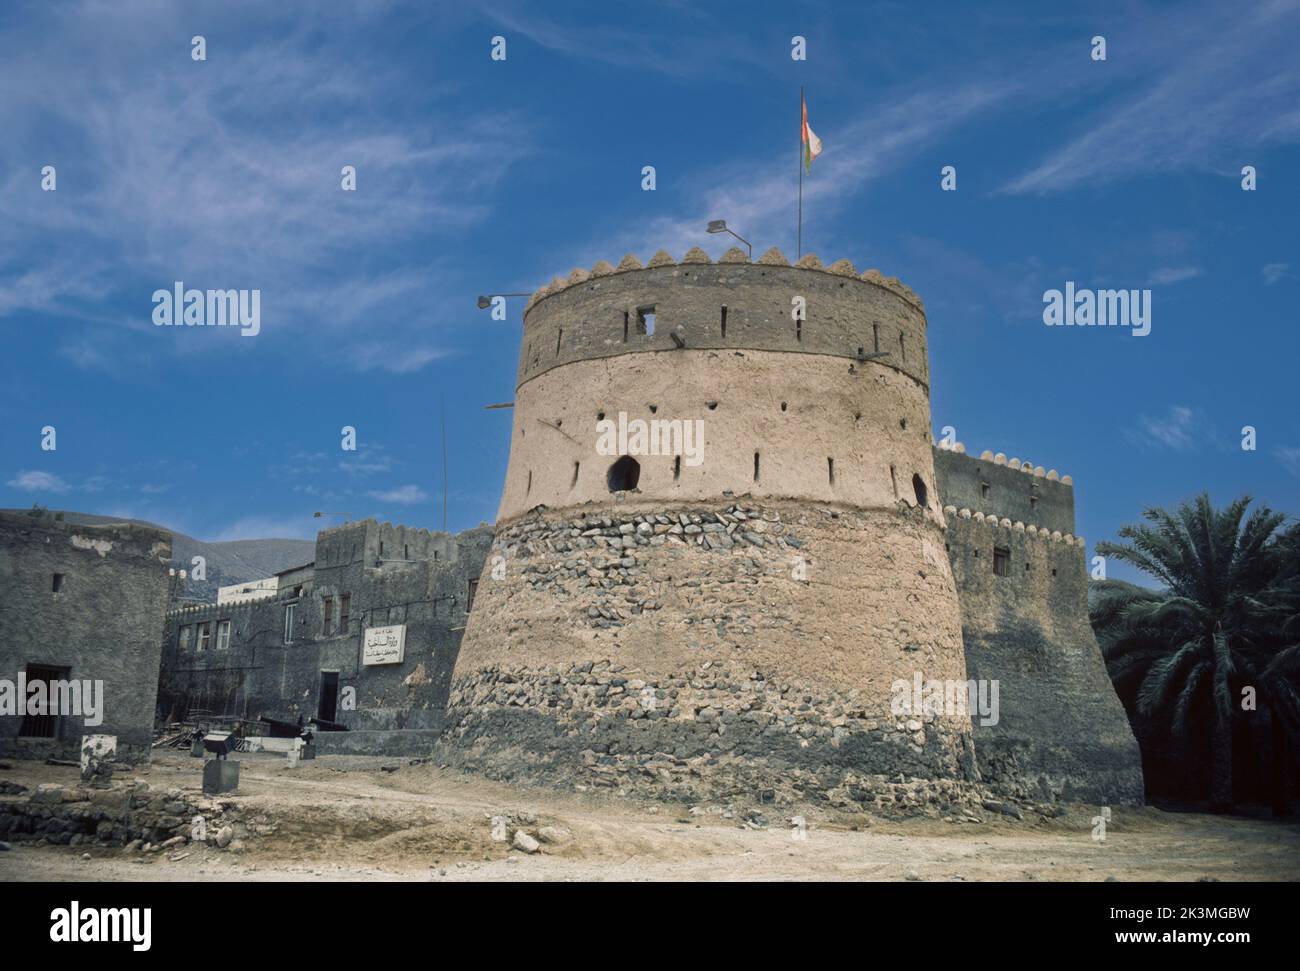 Khasab, Oman. Fort de Khasab et bureaux du ministère de l'intérieur. Photographié en mars 1985. Banque D'Images